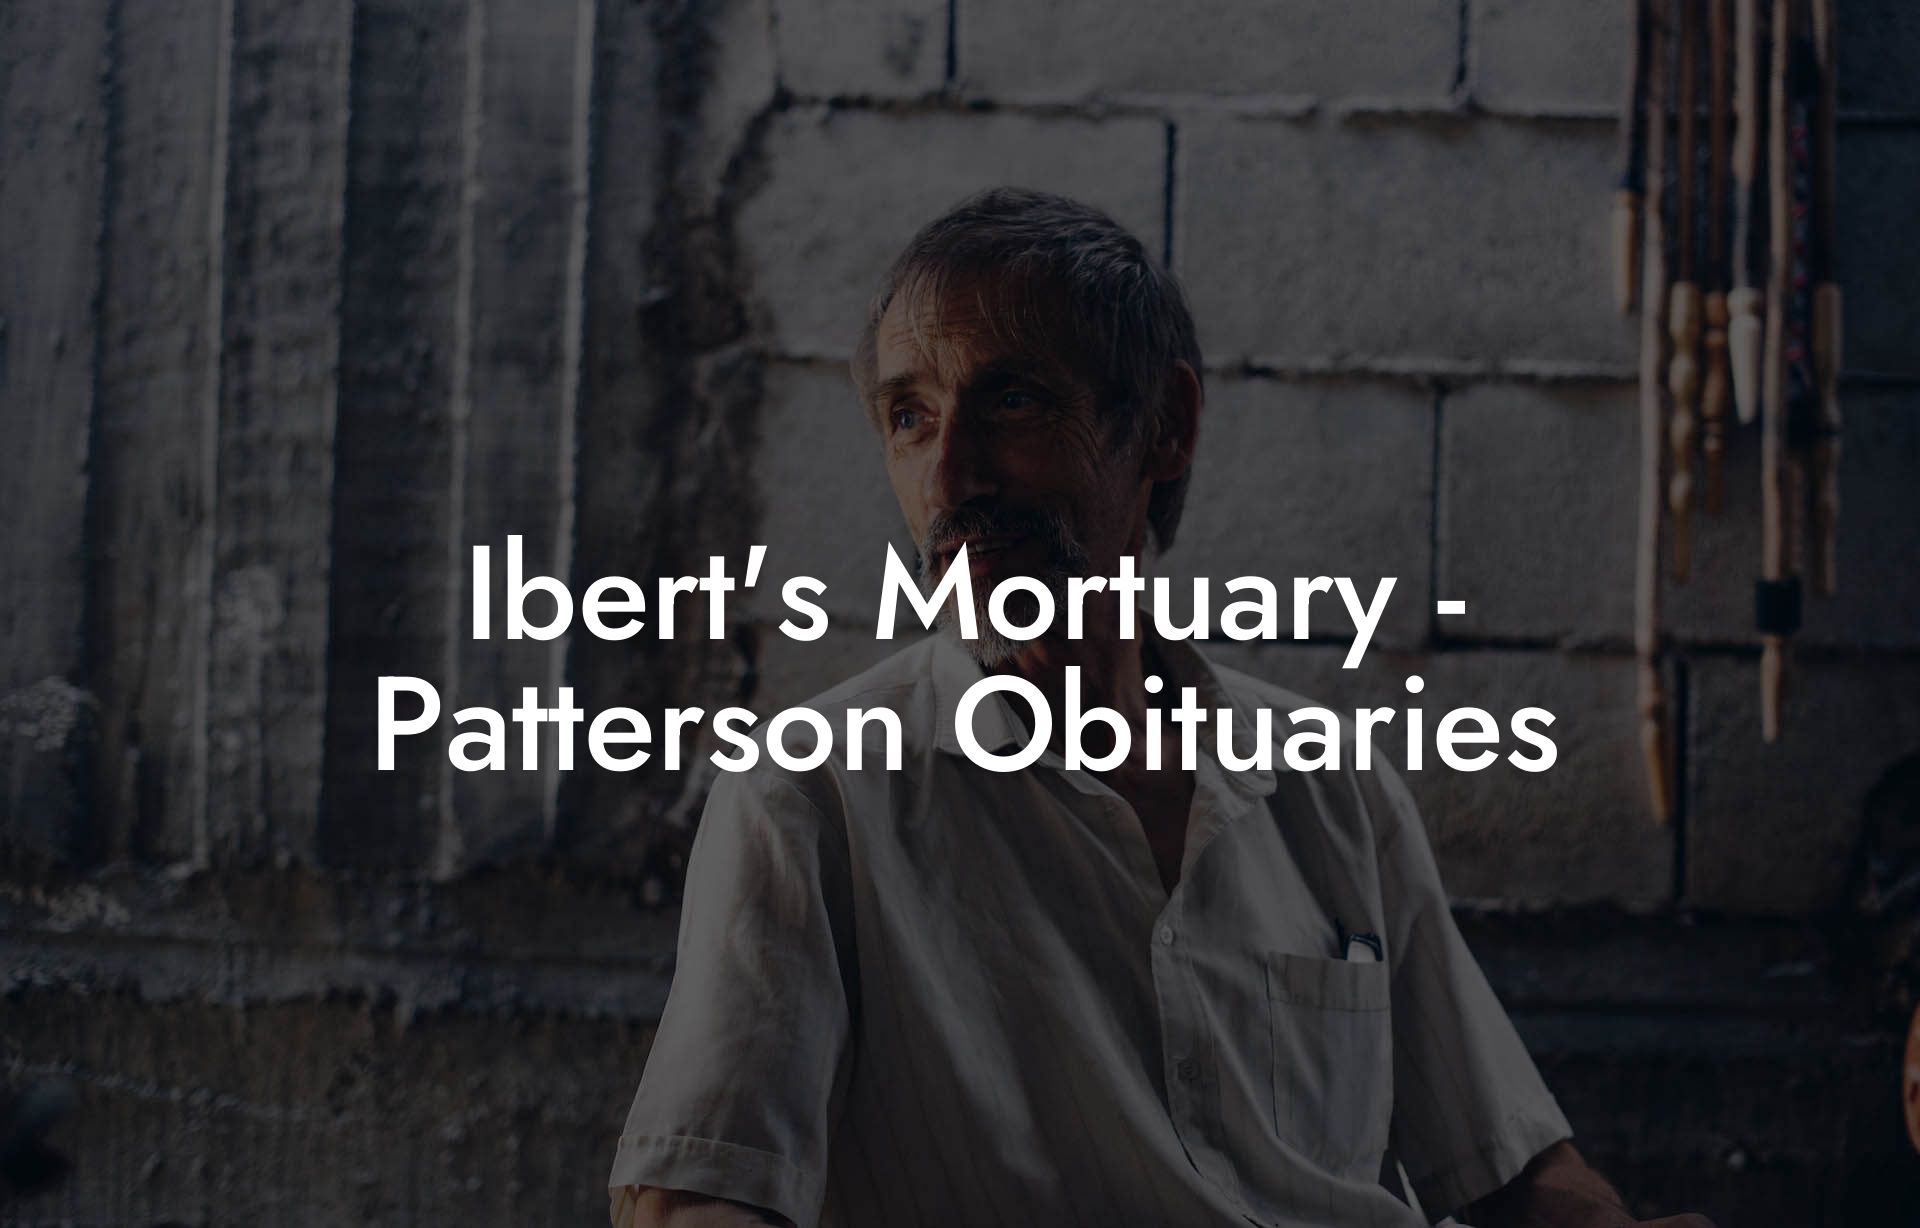 Ibert's Mortuary - Patterson Obituaries